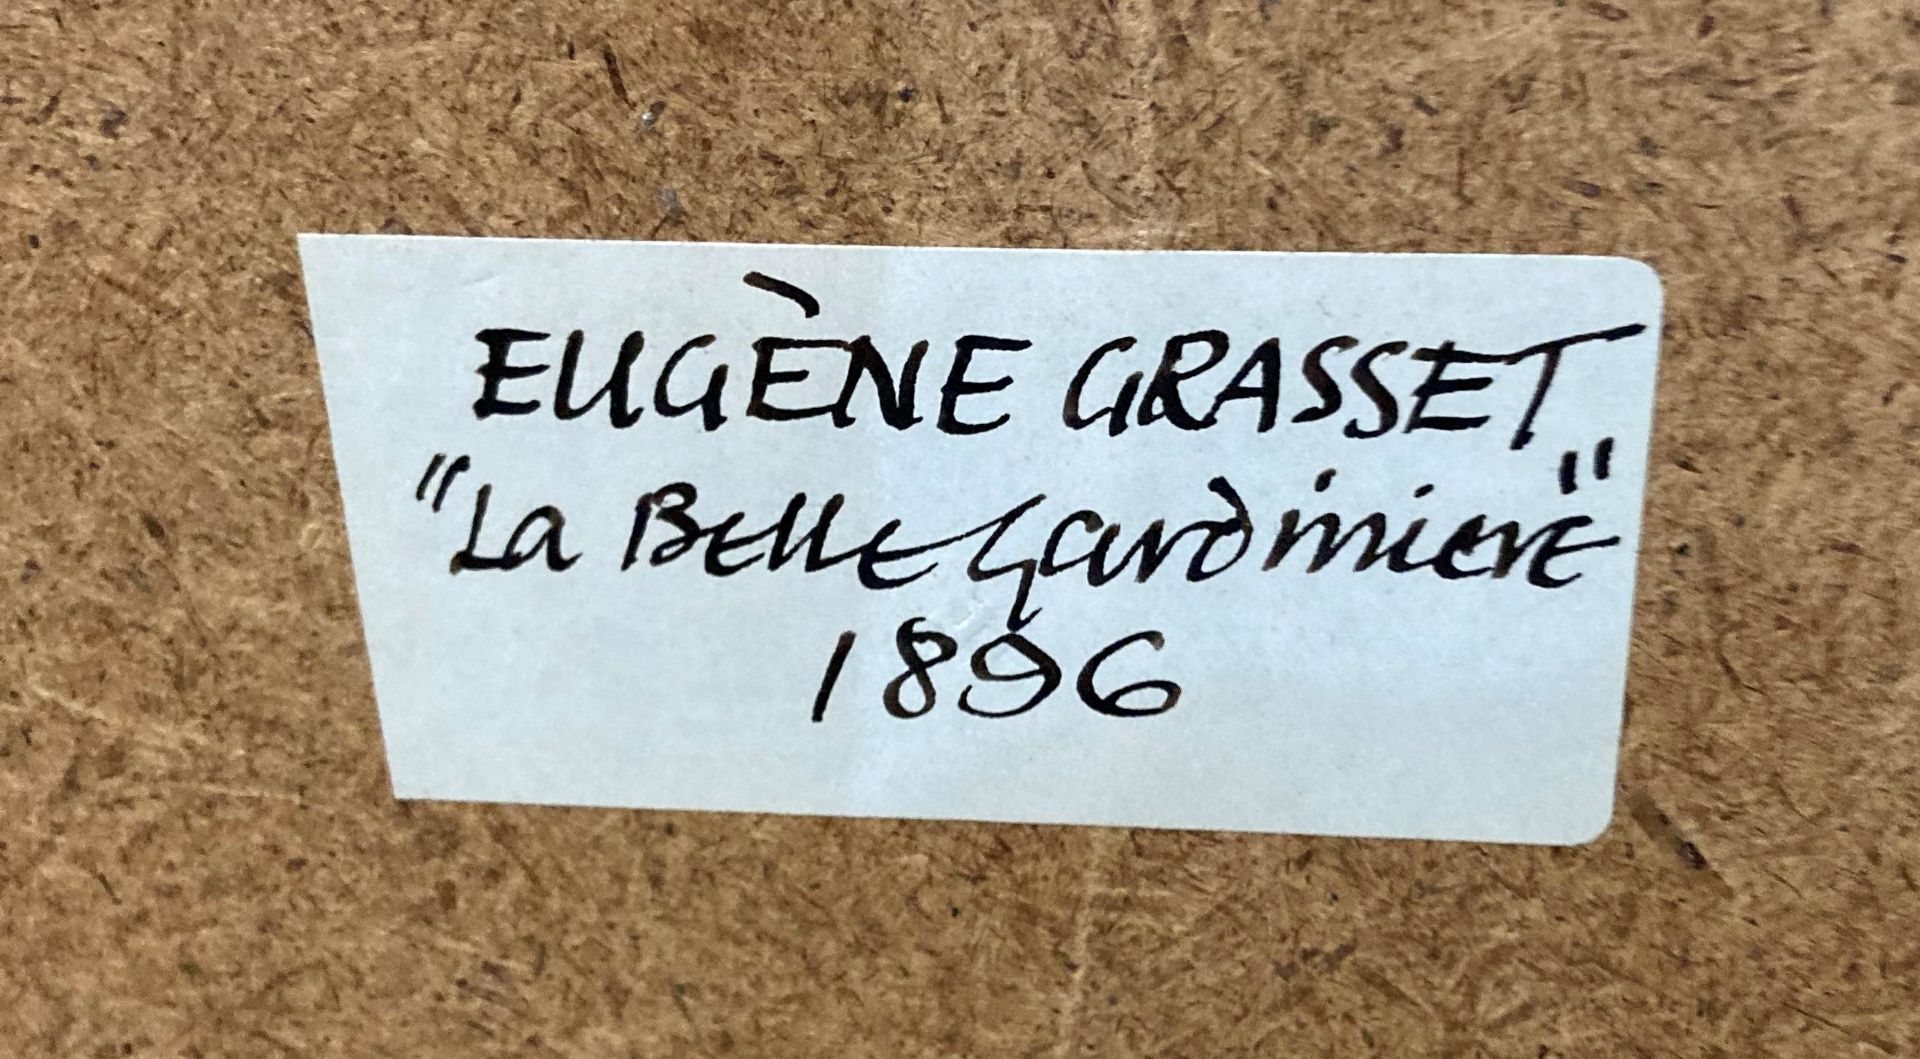 A white framed wood calendar display based on Eugène Grasset's 'La Belle Gardiniere 1896', - Image 2 of 2